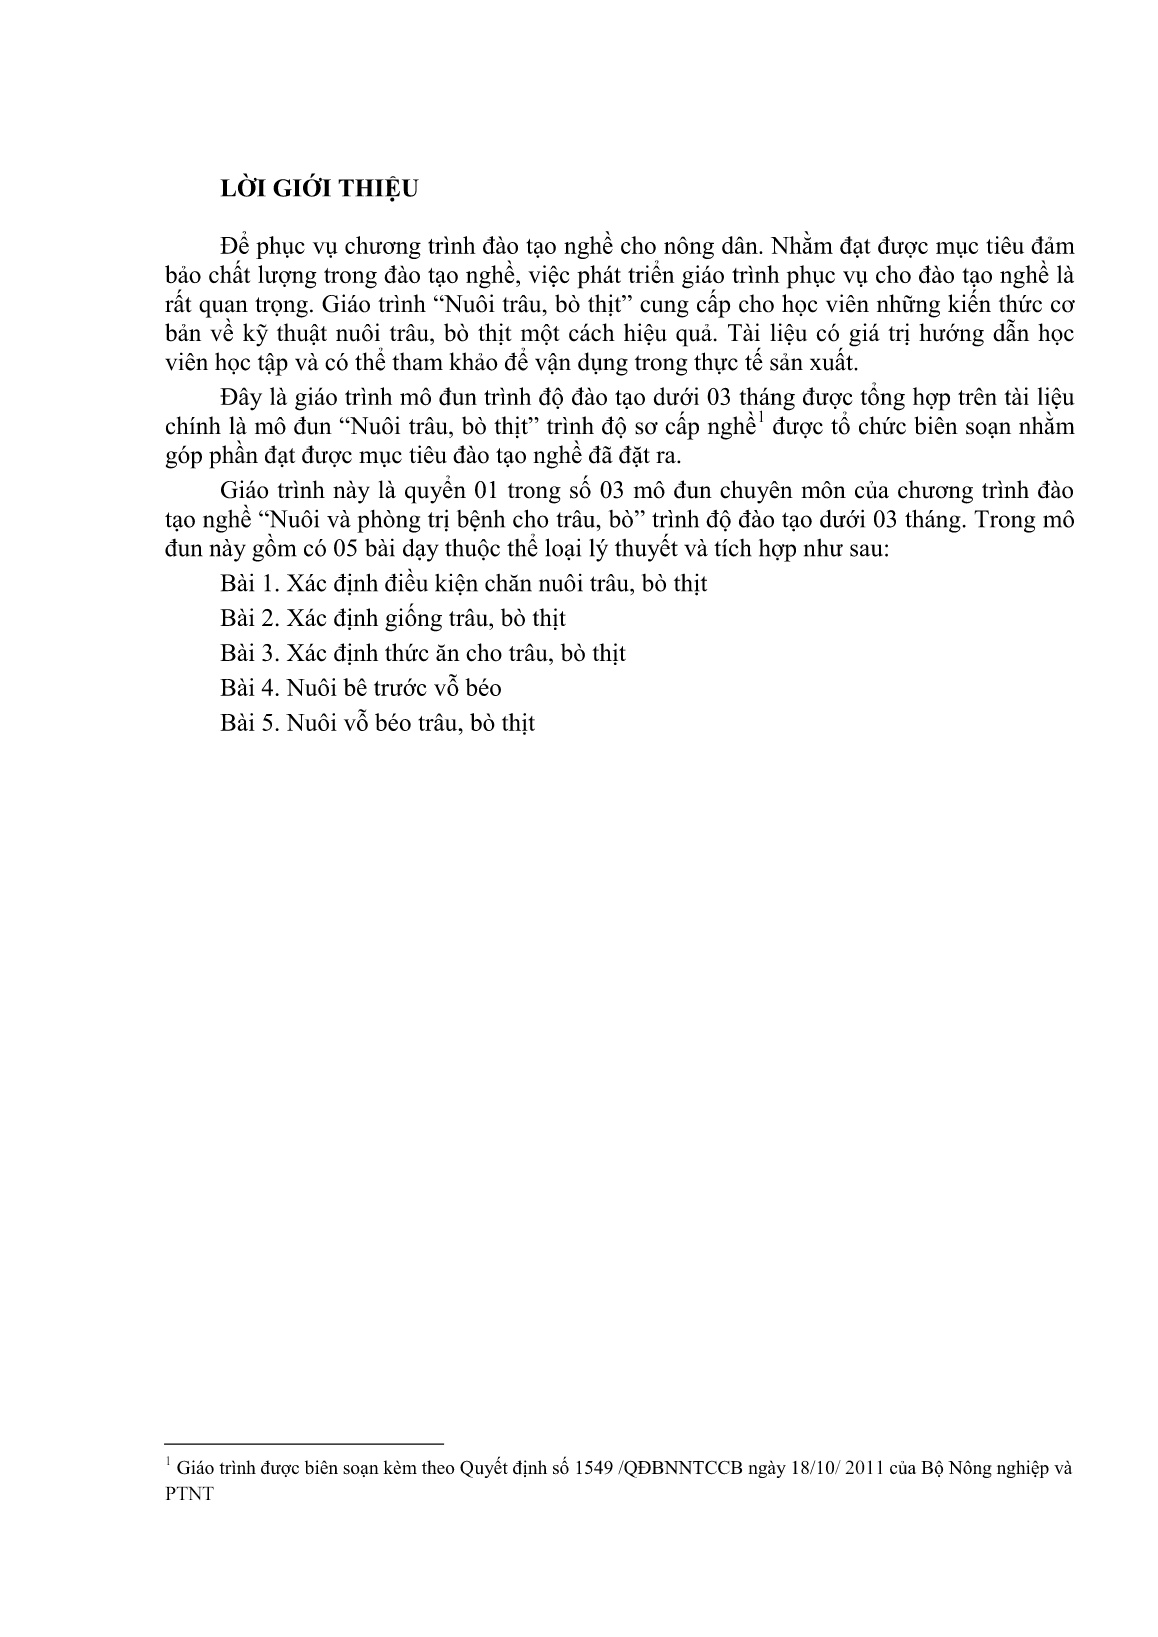 Giáo trình mô đun Nuôi trâu, bò thịt (Trình độ: Đào tạo dưới 3 tháng) trang 2